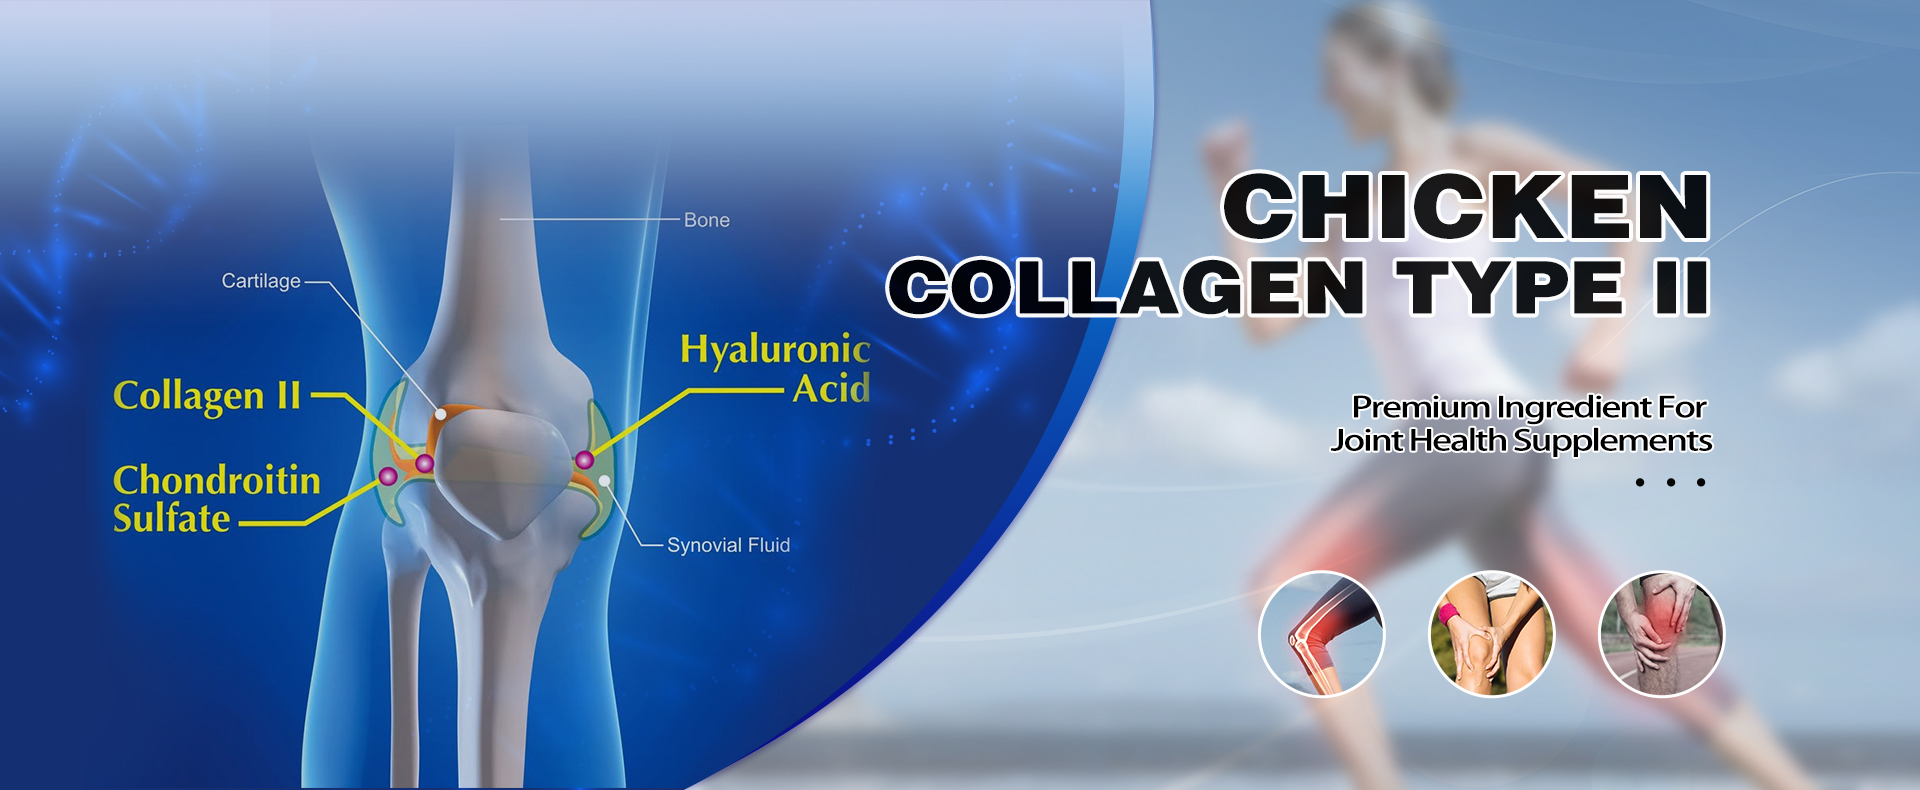 Hydrolyzed collagen powder, fish collagen,Tripeptide Collagen - Beyond